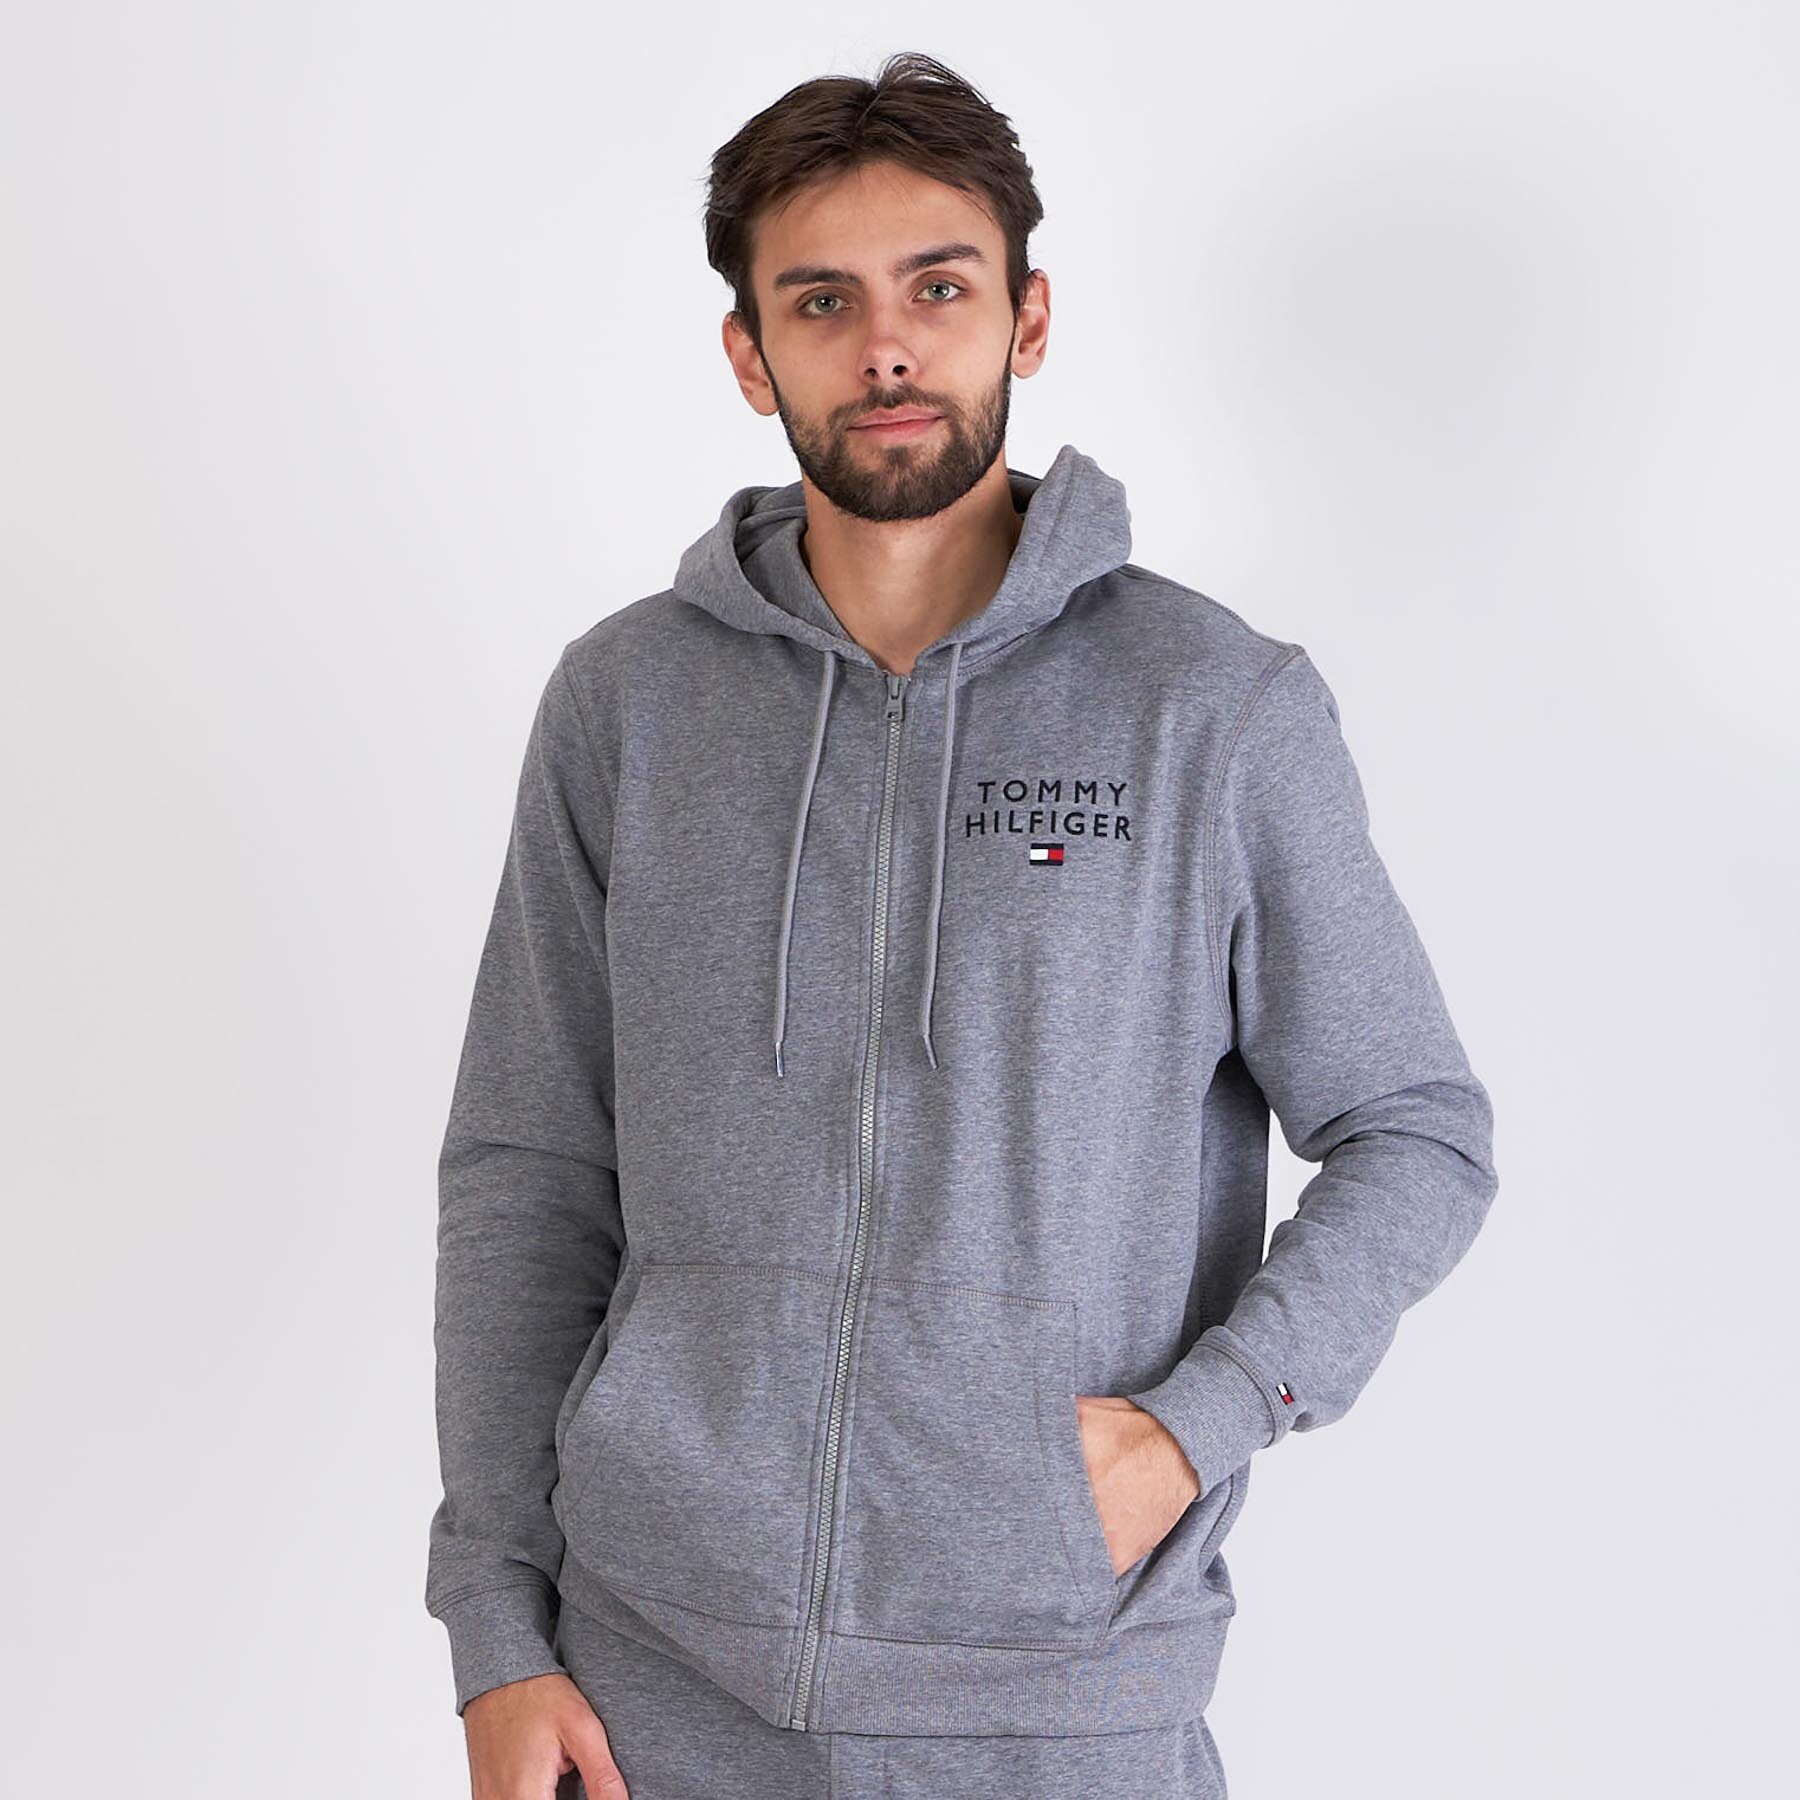 Tommy Jeans - Fz hoodie hwk - Sweatshirts og trøjer til herre - Grå - XXL